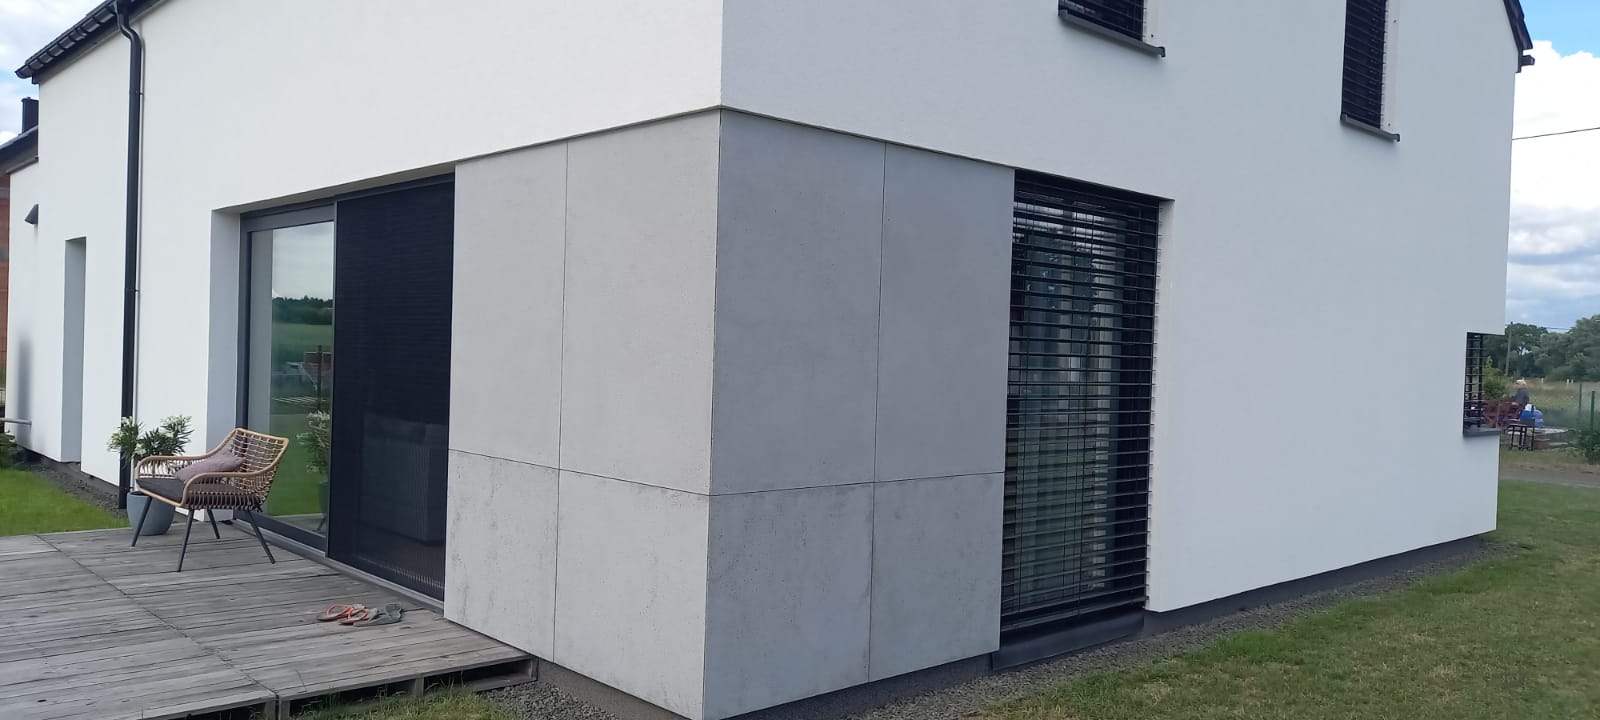 beton architektoniczny na elewacje pmdesign - Elewacja